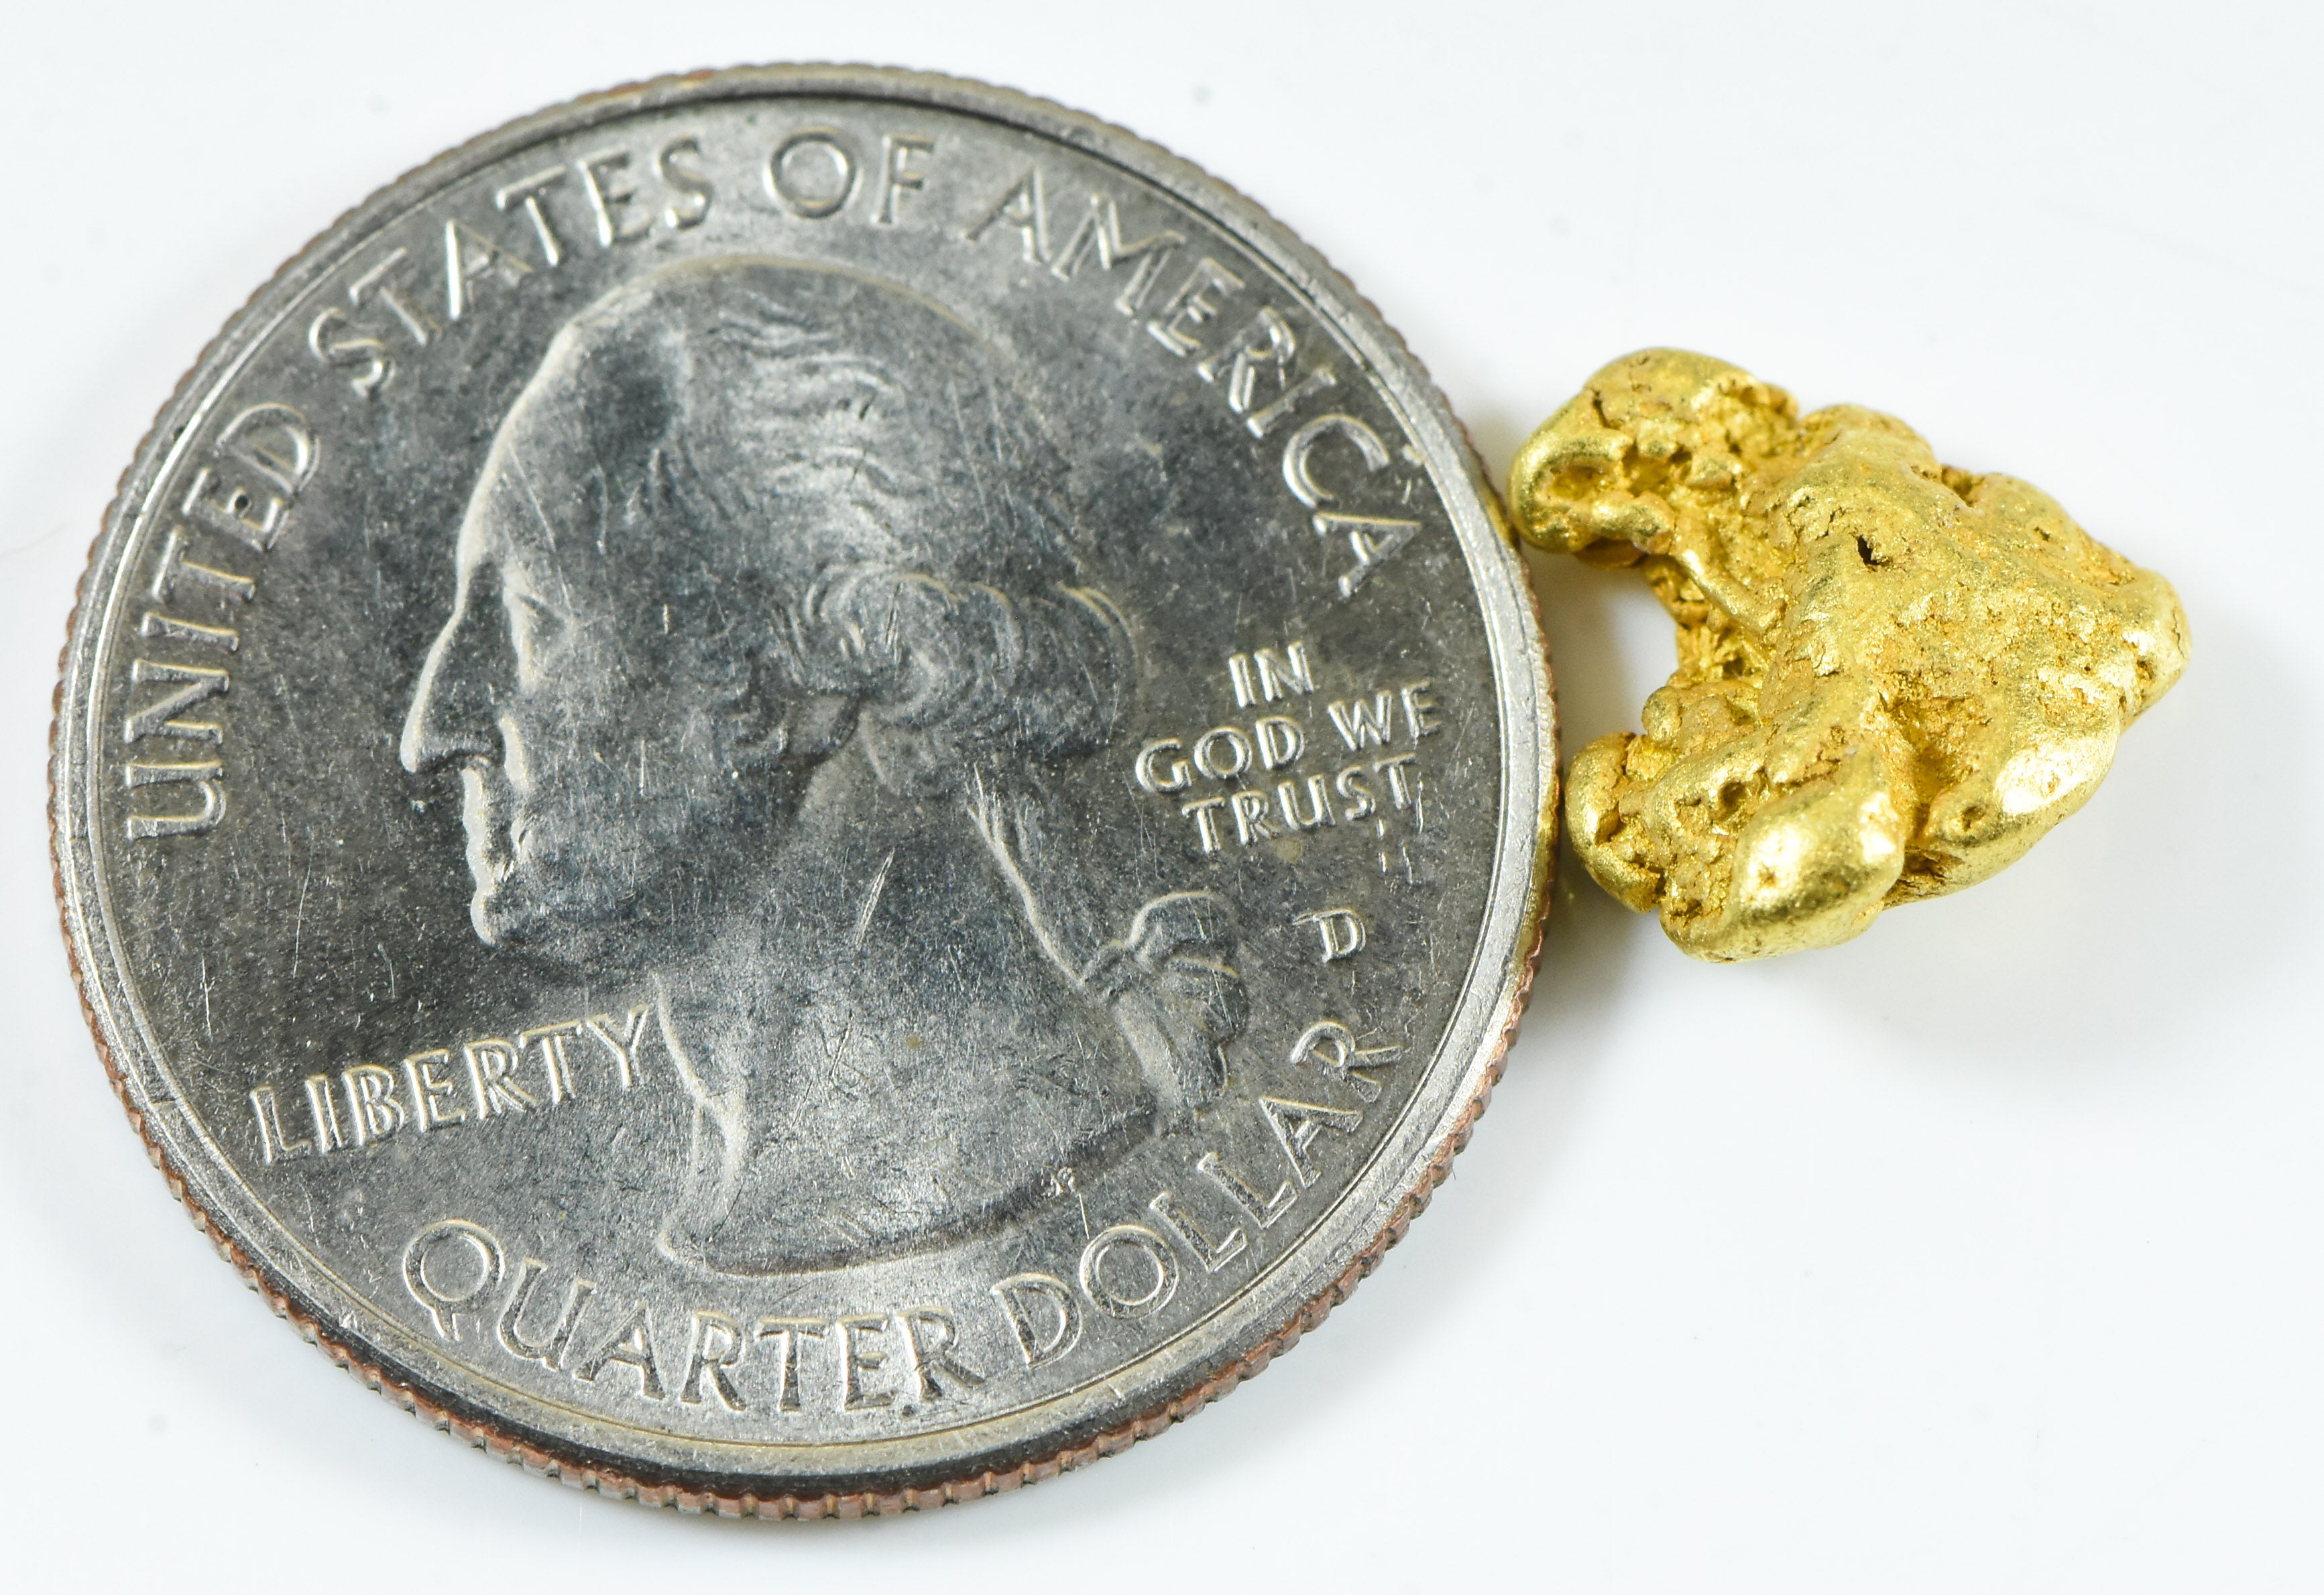 #210 Alaskan BC Natural Gold Nugget 2.52 Grams Genuine